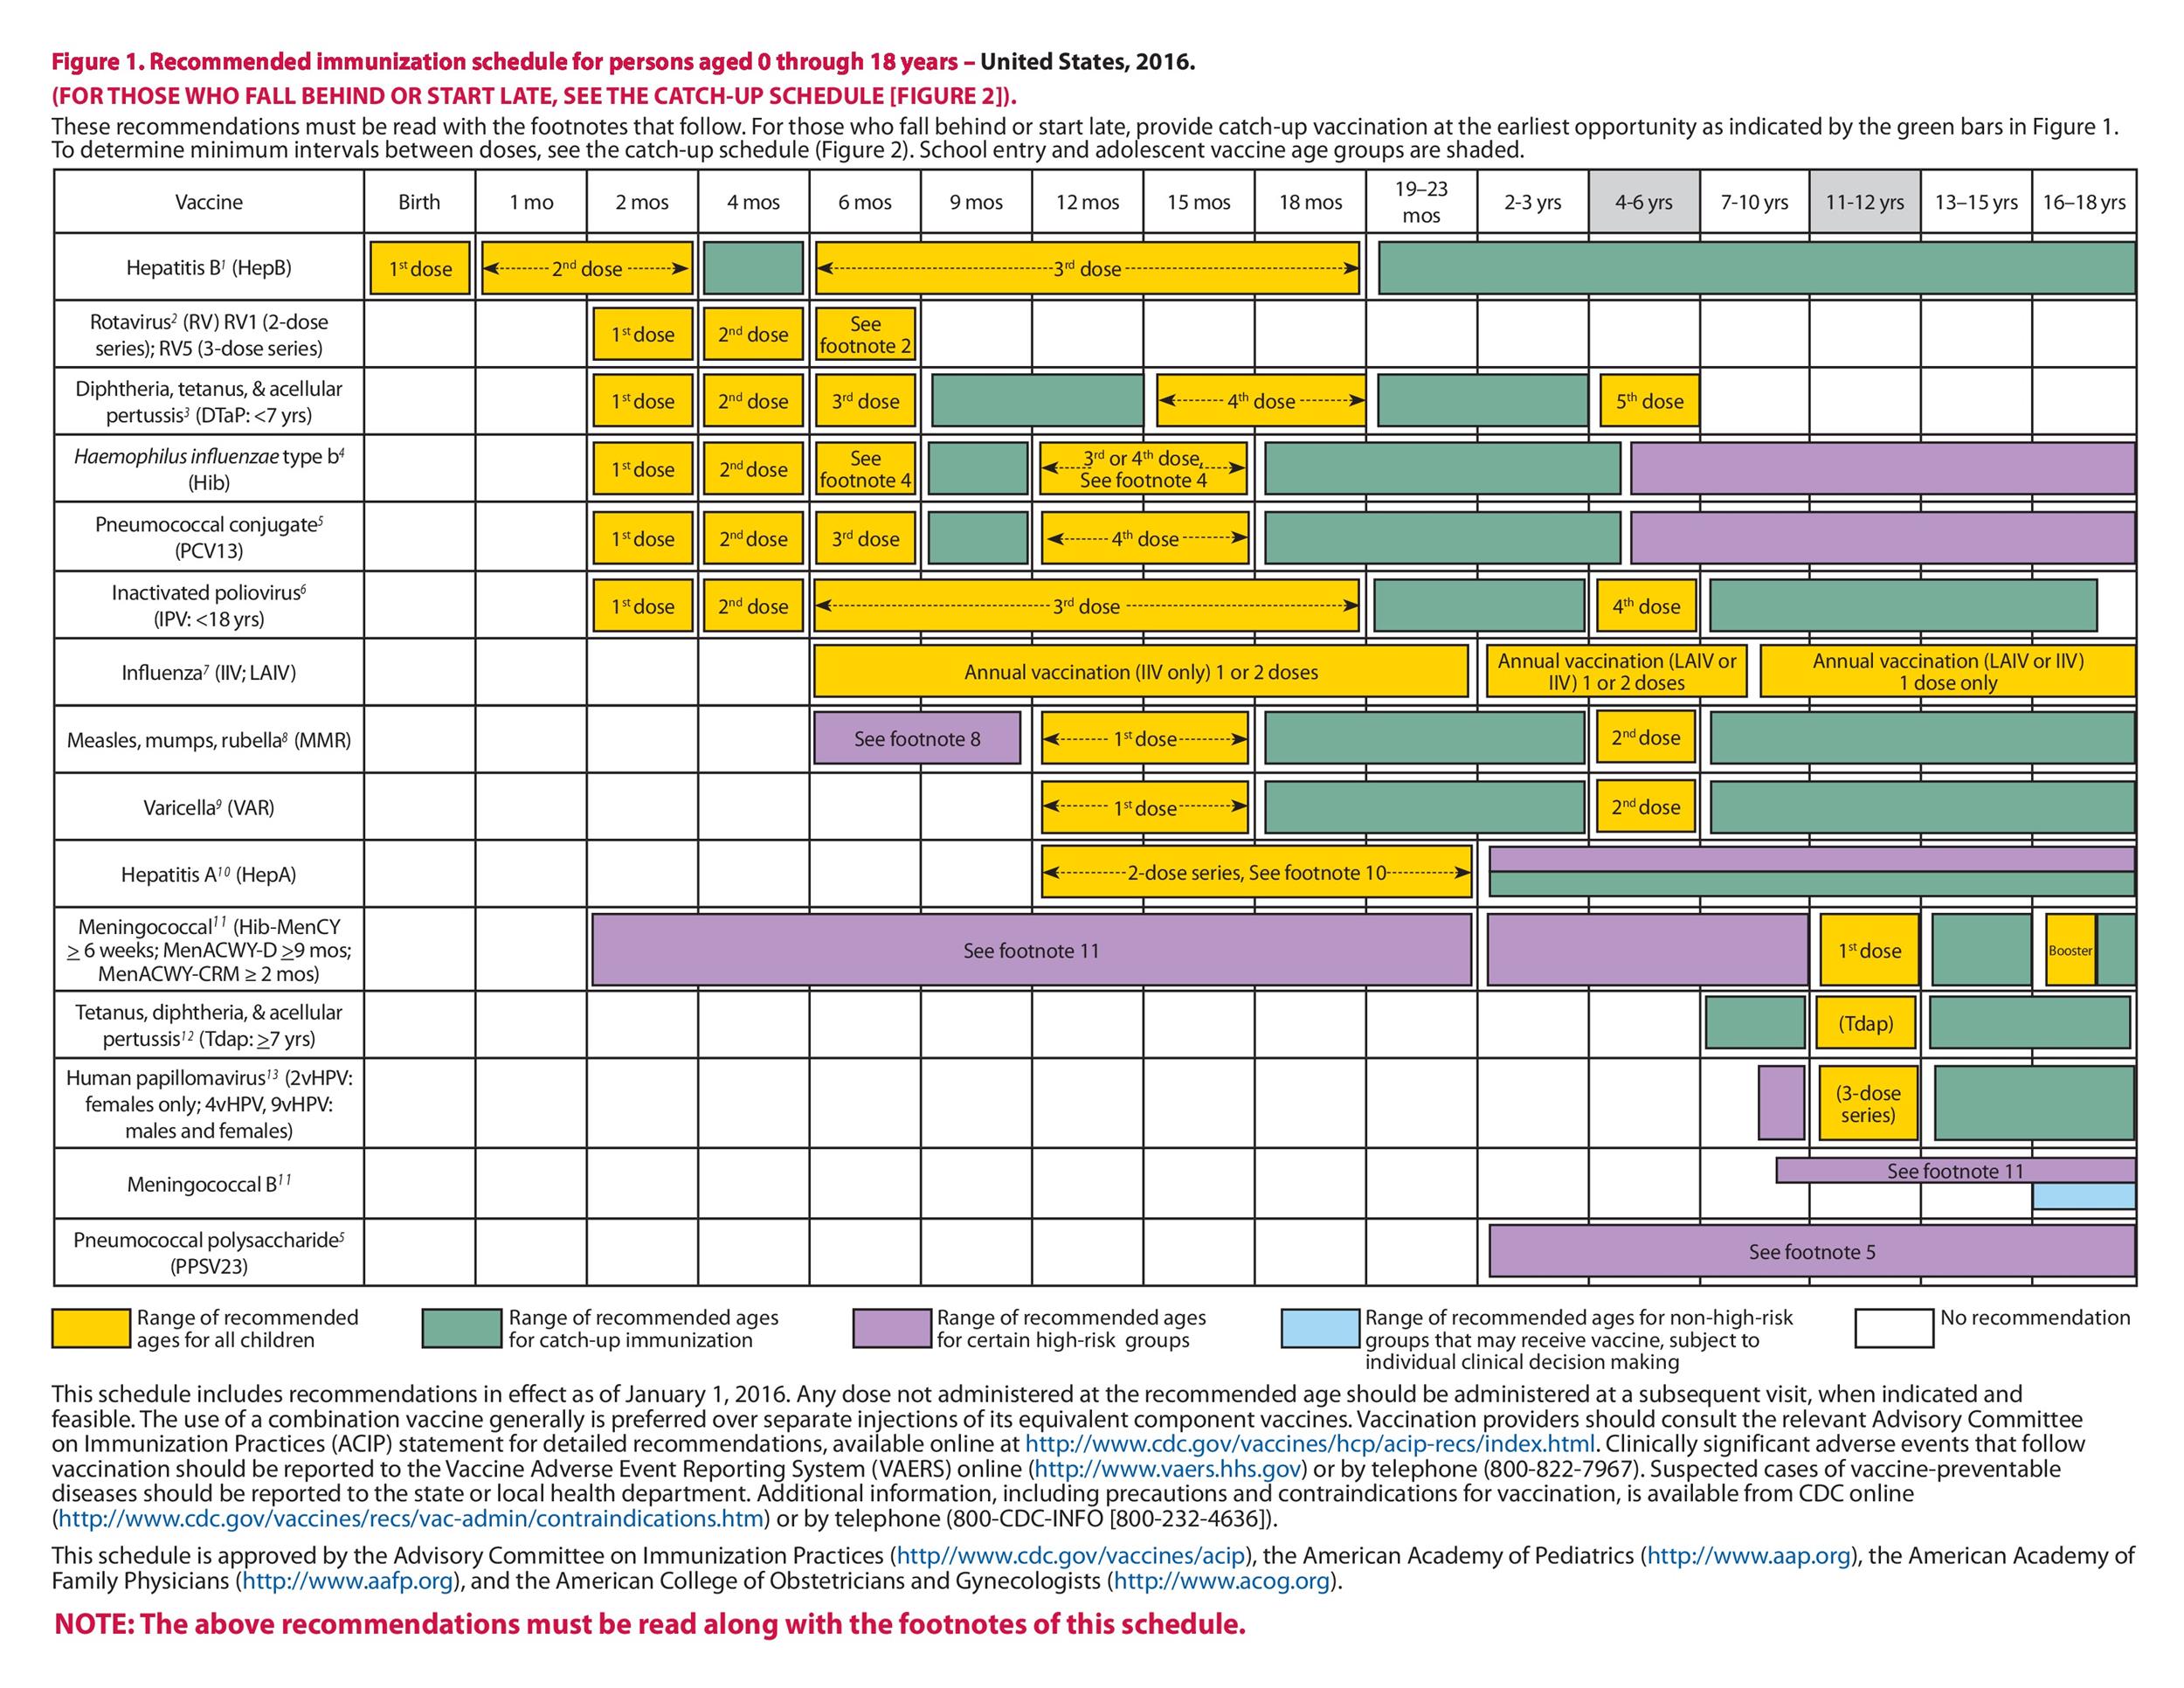 38 Useful Immunization & Vaccination Schedules [PDF ...